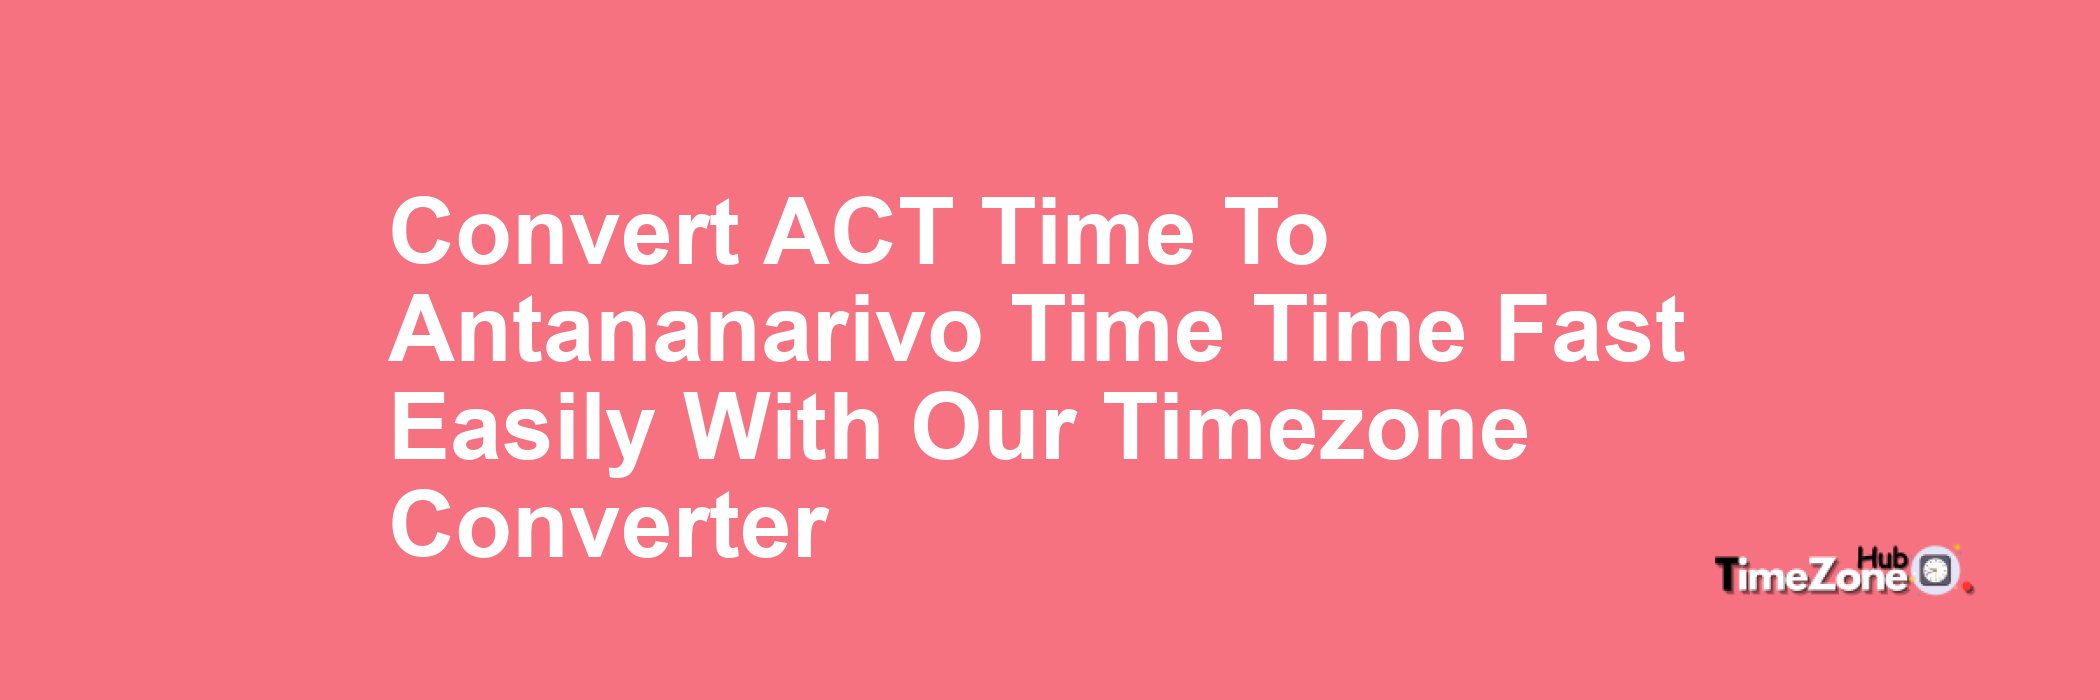 ACT Time to Antananarivo Time